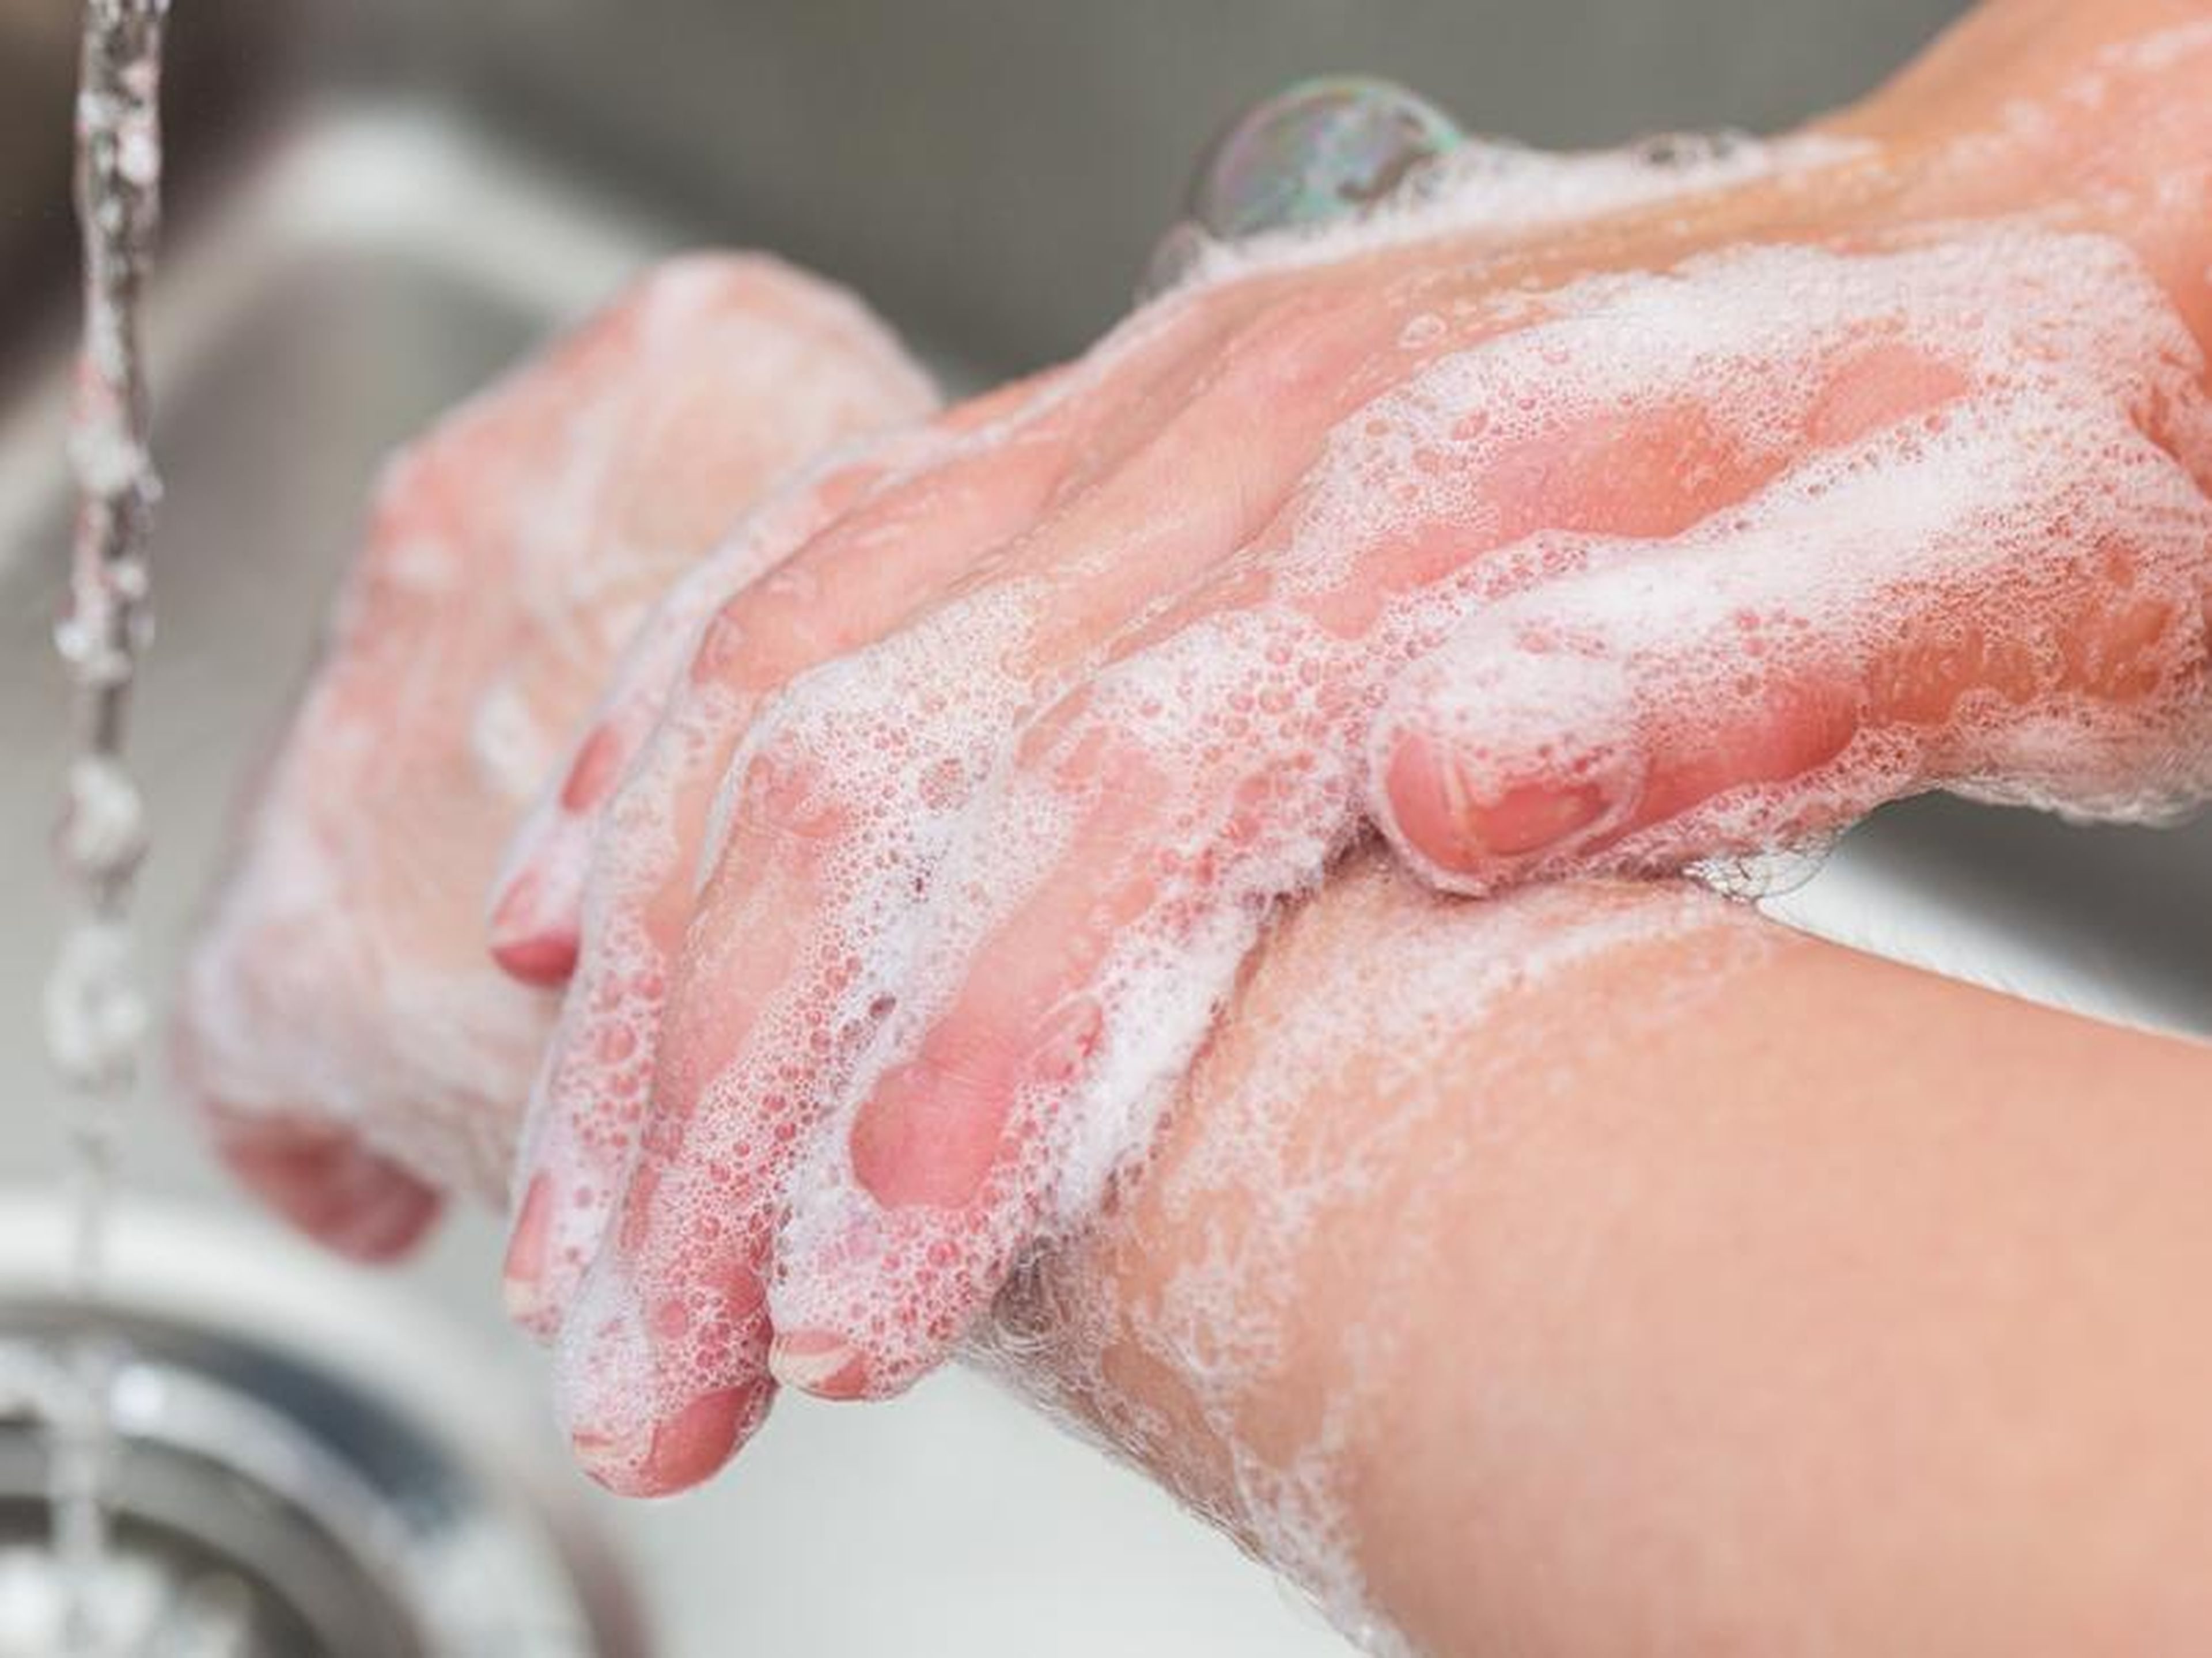 Para limpiar tus manos de manera efectiva, debes lavarlas enérgicamente con agua y jabón durante al menos 20 segundos.